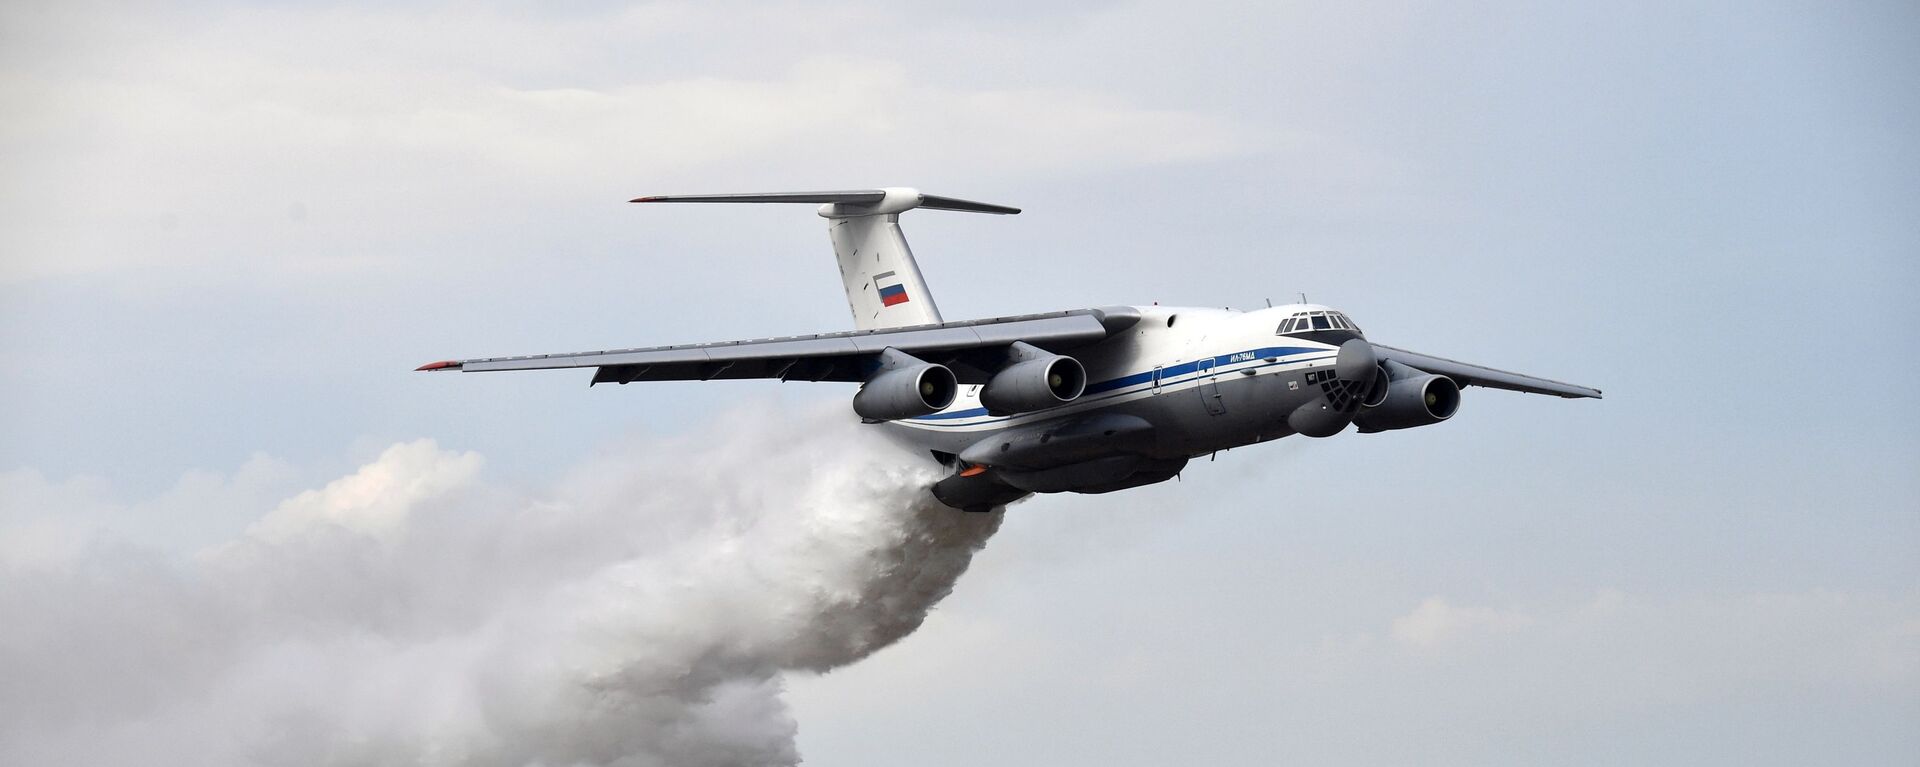 Самолет Ил-76ТД сбрасывает воду во время основного этапа учений Запад-2021 на полигоне Мулино в Нижегородской области - Sputnik Таджикистан, 1920, 29.10.2021